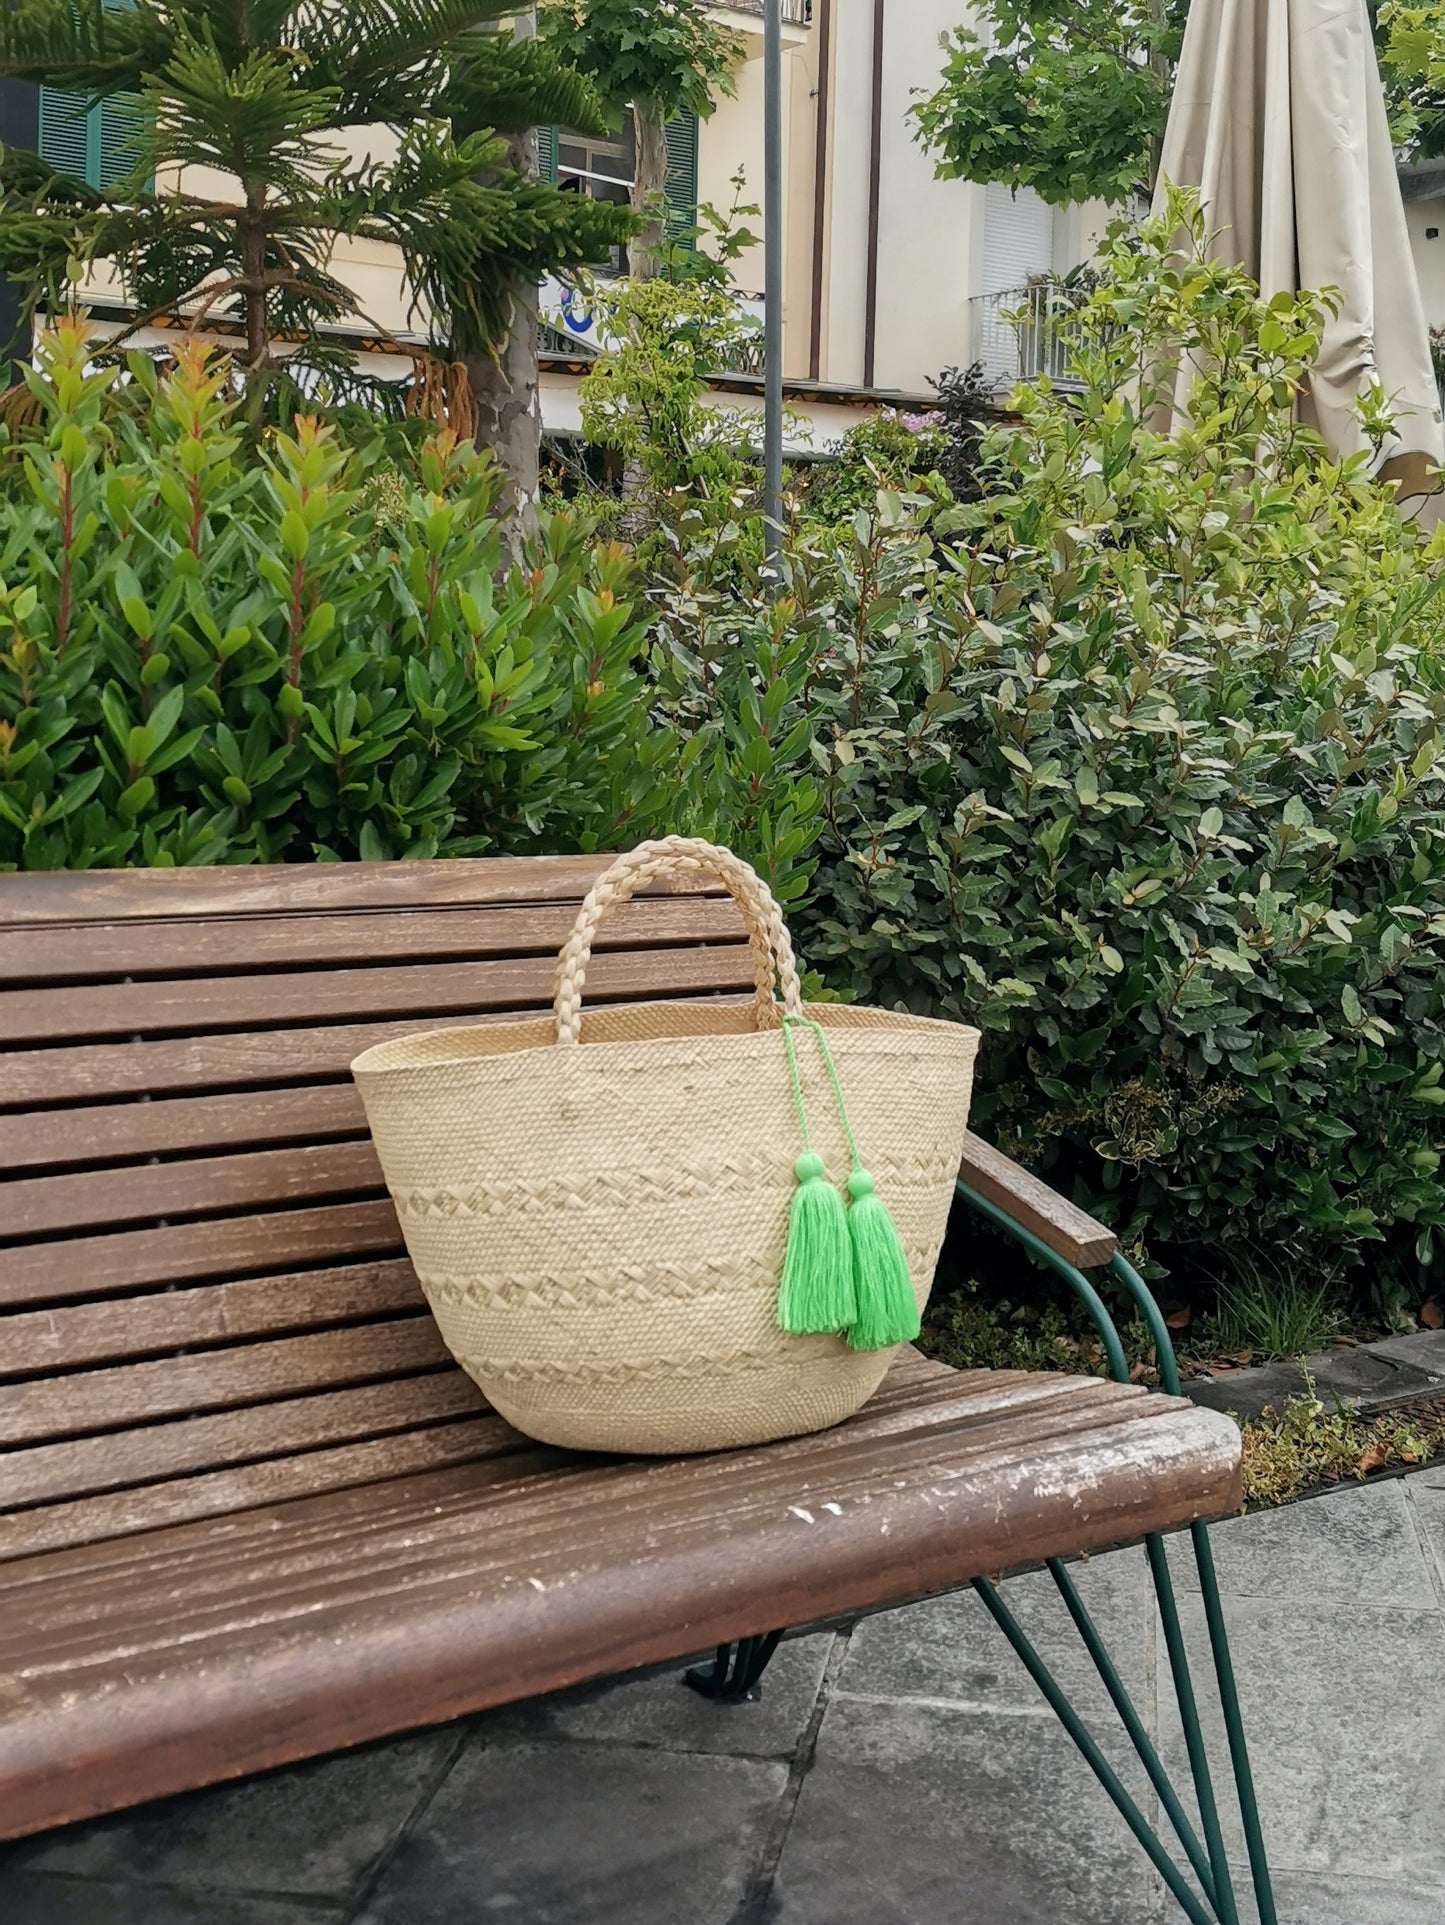 Cartagena basket bag L green